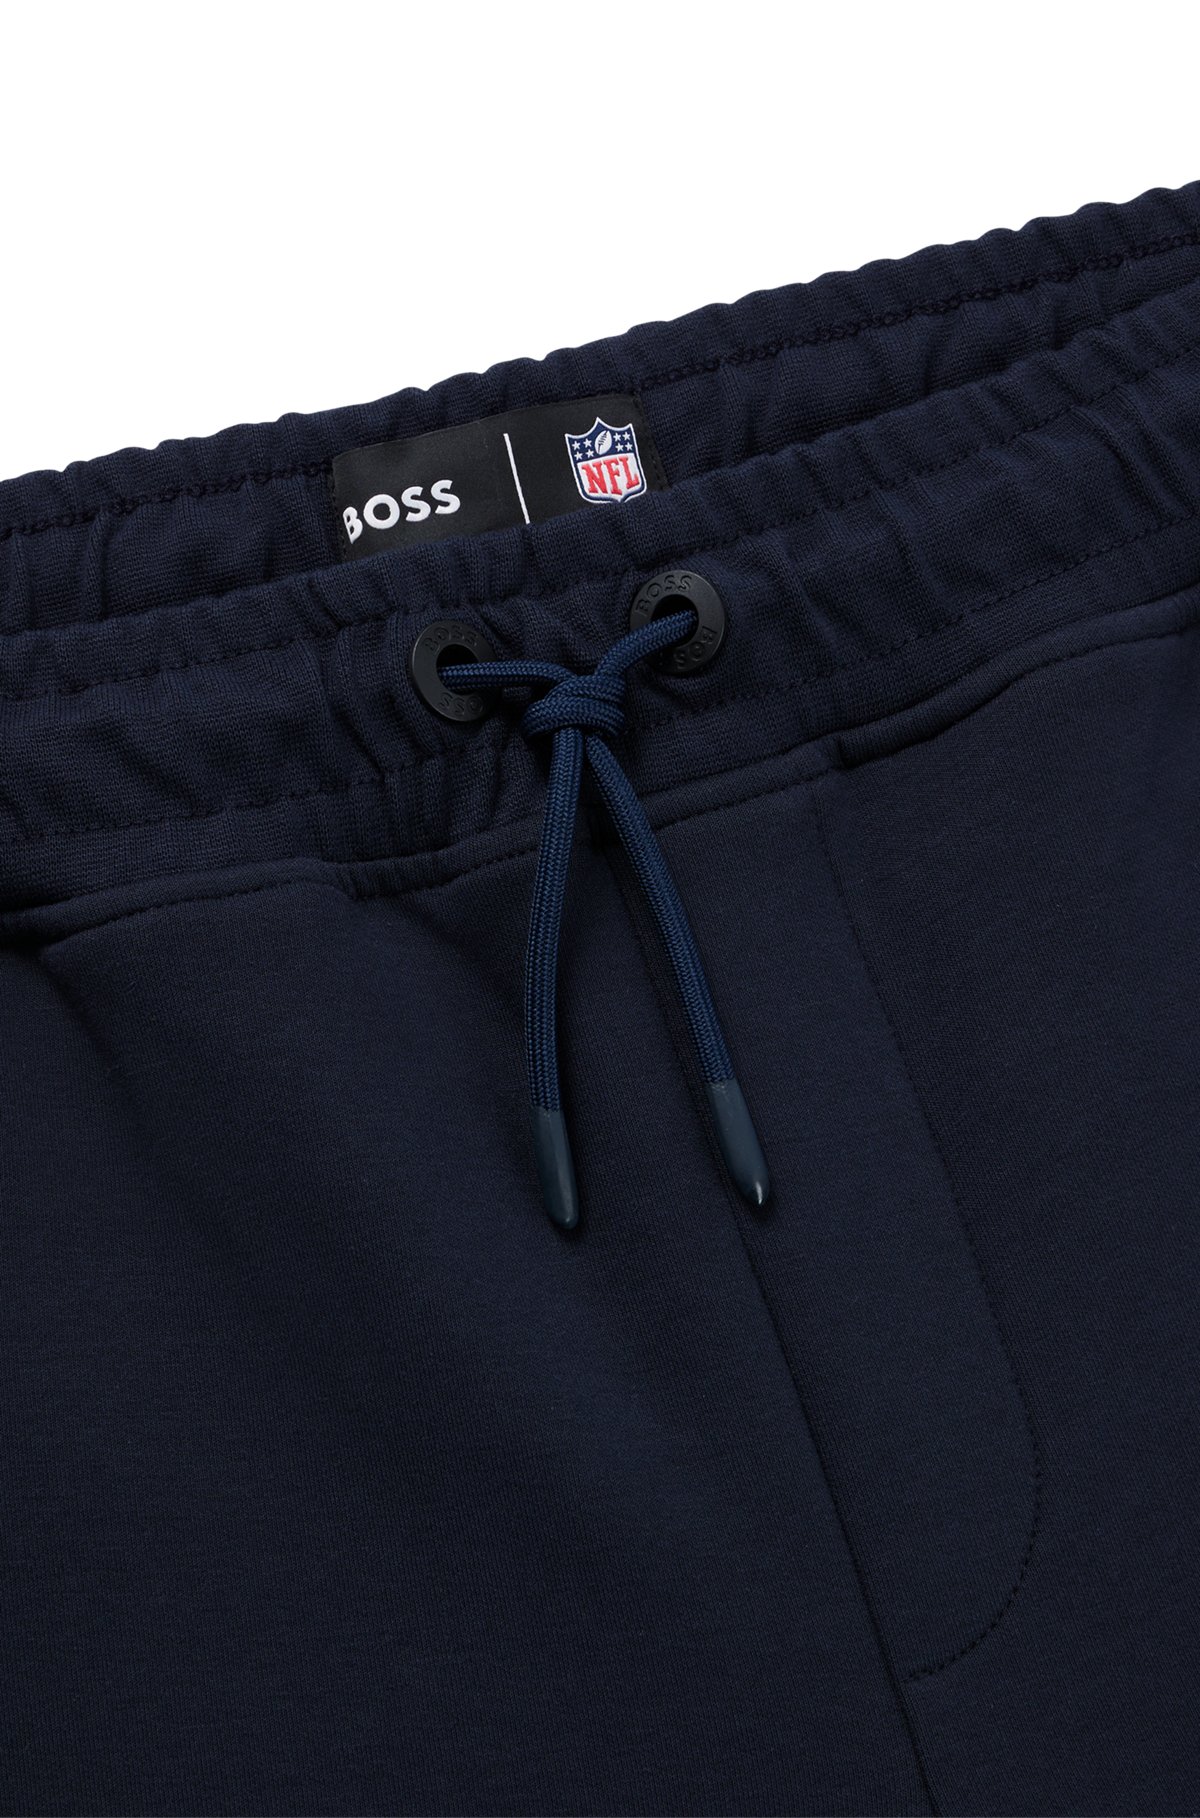 Bas de survêtement BOSS x NFL en coton mélangé avec logo du partenariat, Seahawks